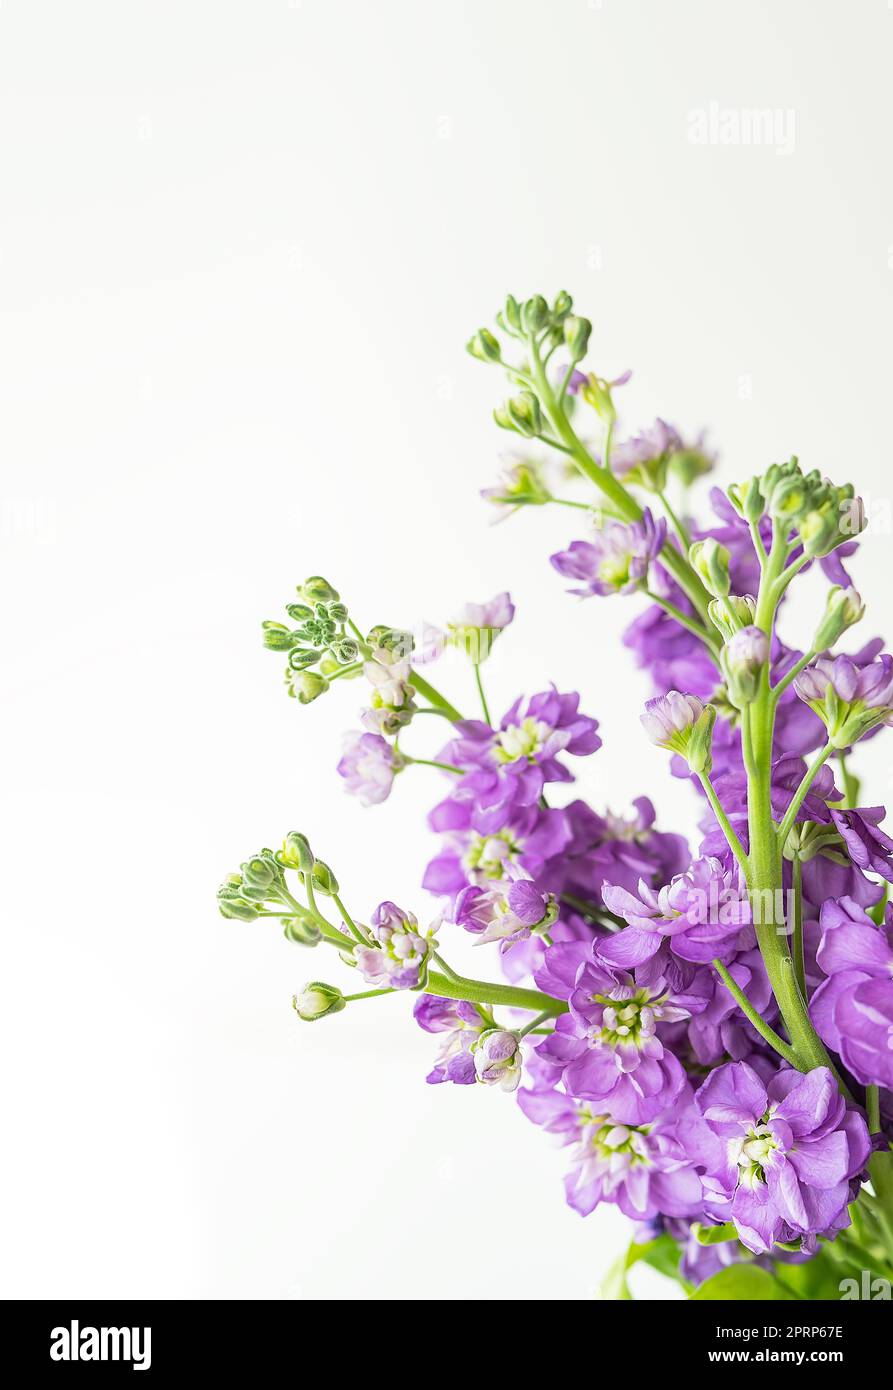 Sehr schöne Matthiola-Blumen, wunderschöne Lavendel-Farbe, Blumenstrauß auf weißem Hintergrund, Platz für eine Inschrift. Stockfoto